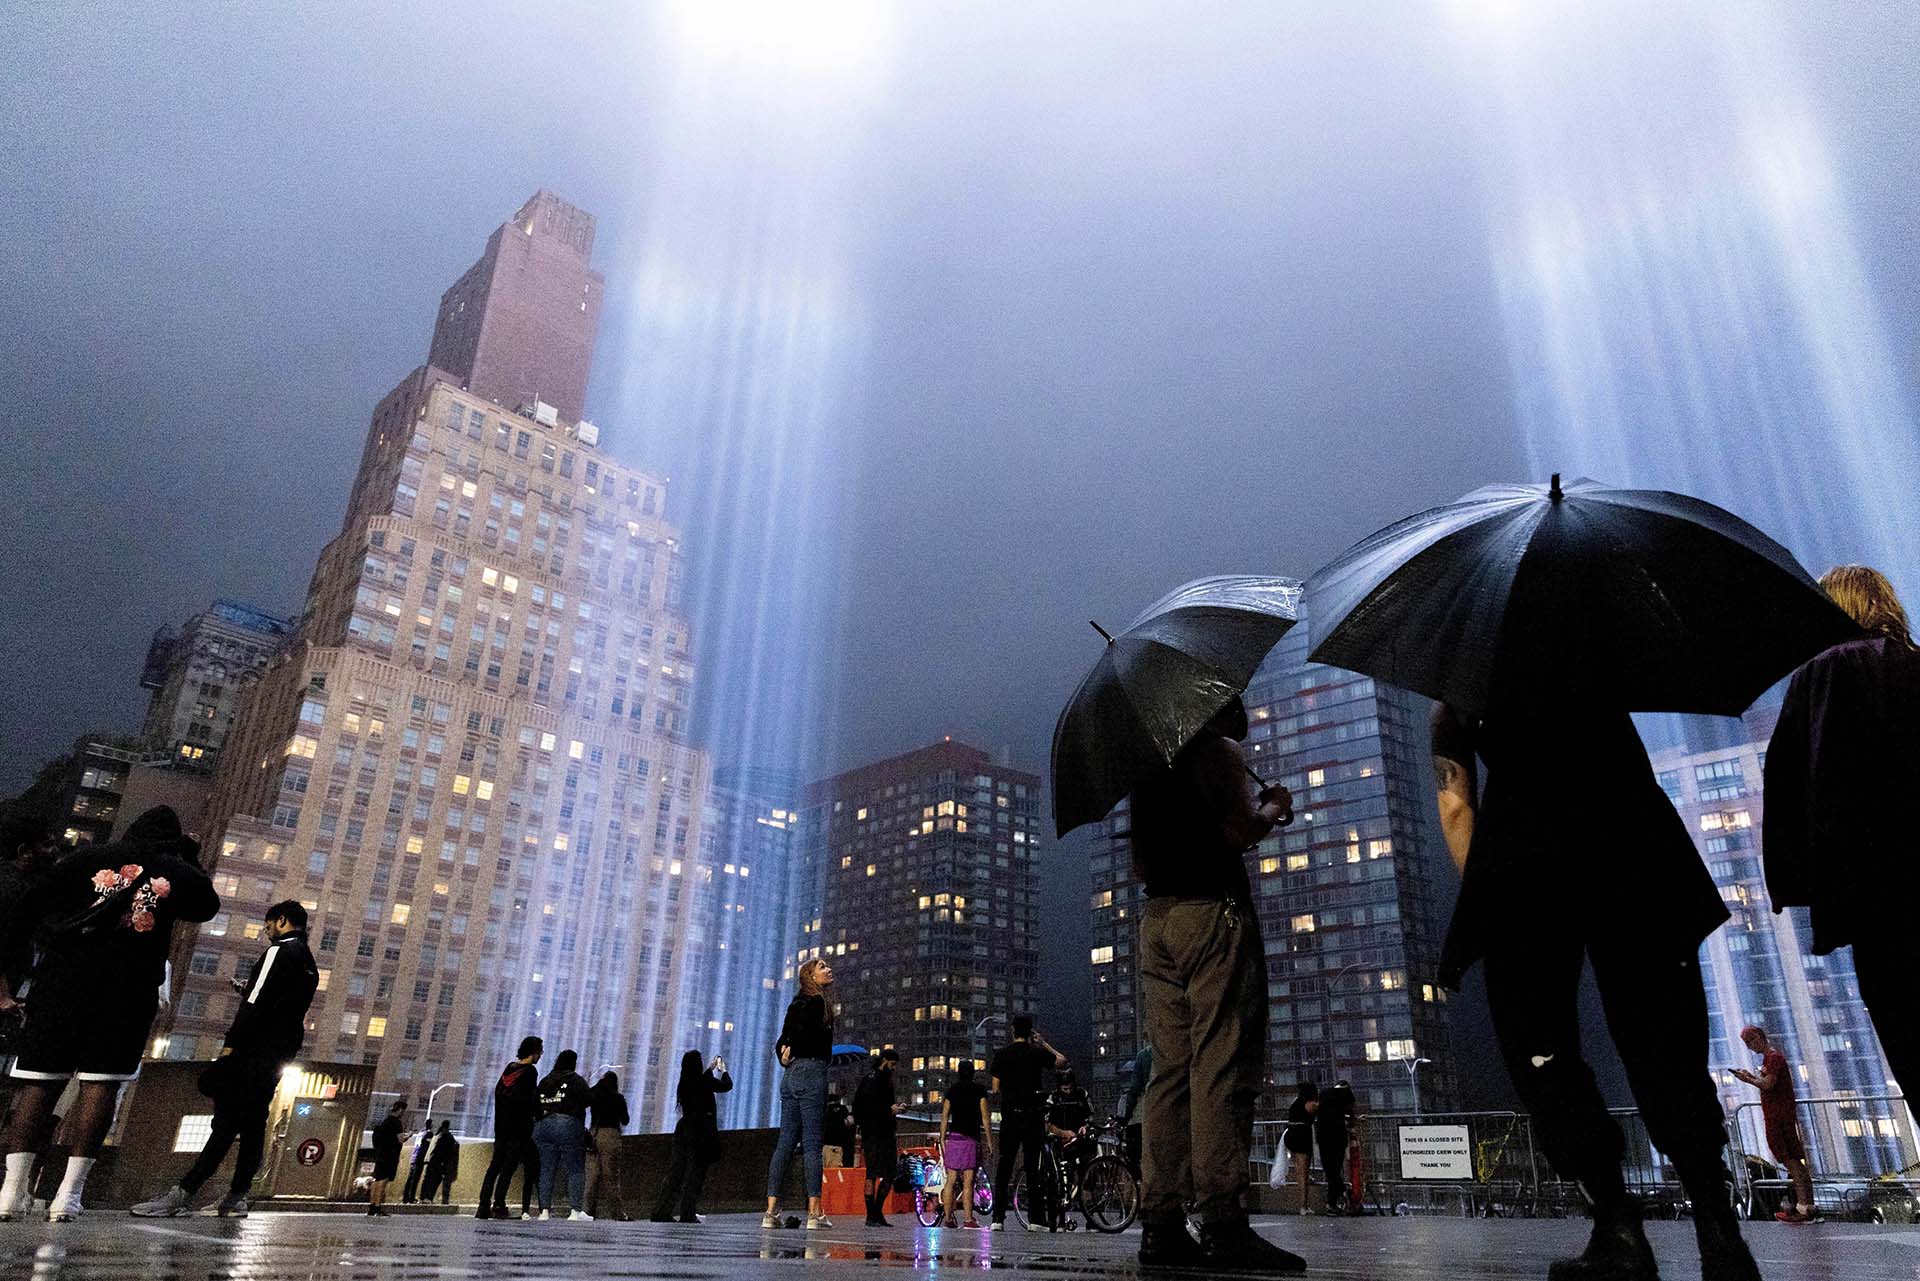 Se cumplieron 21 años del ataque terrorista a las Torres Gemelas. El clásico homenaje de luces que simulan a los edificios derribados iluminaron una vez más a Nueva York. 